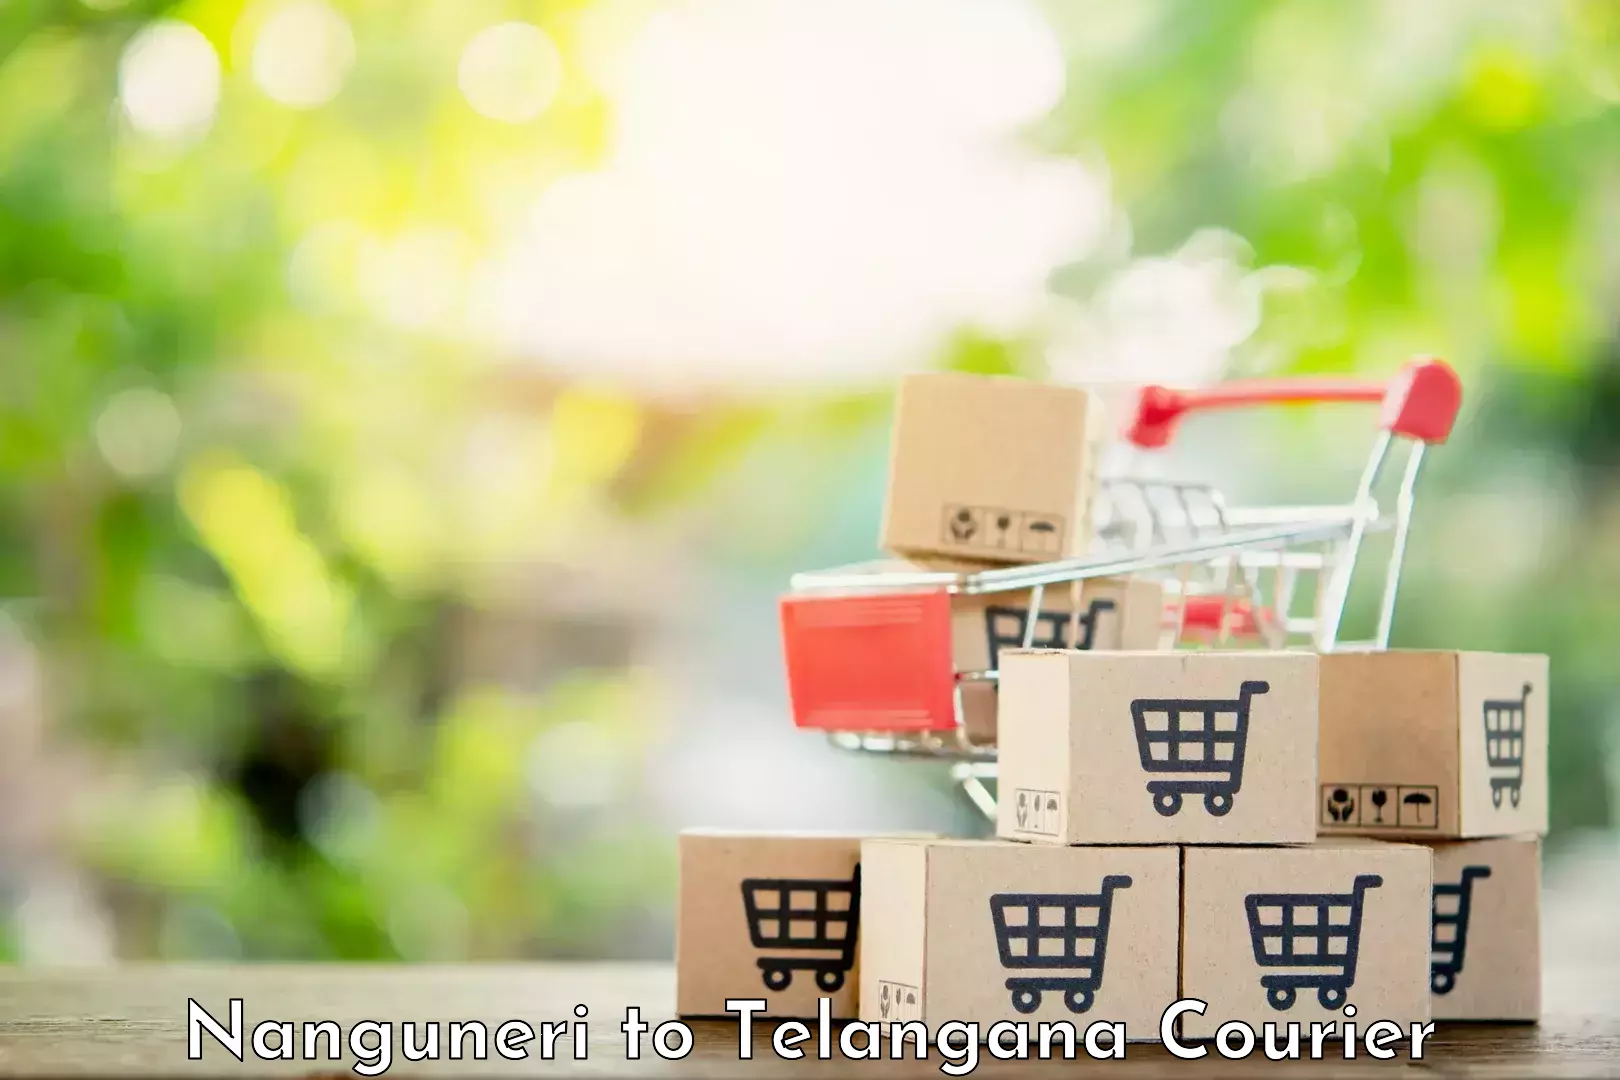 Cost-effective courier solutions Nanguneri to Chegunta